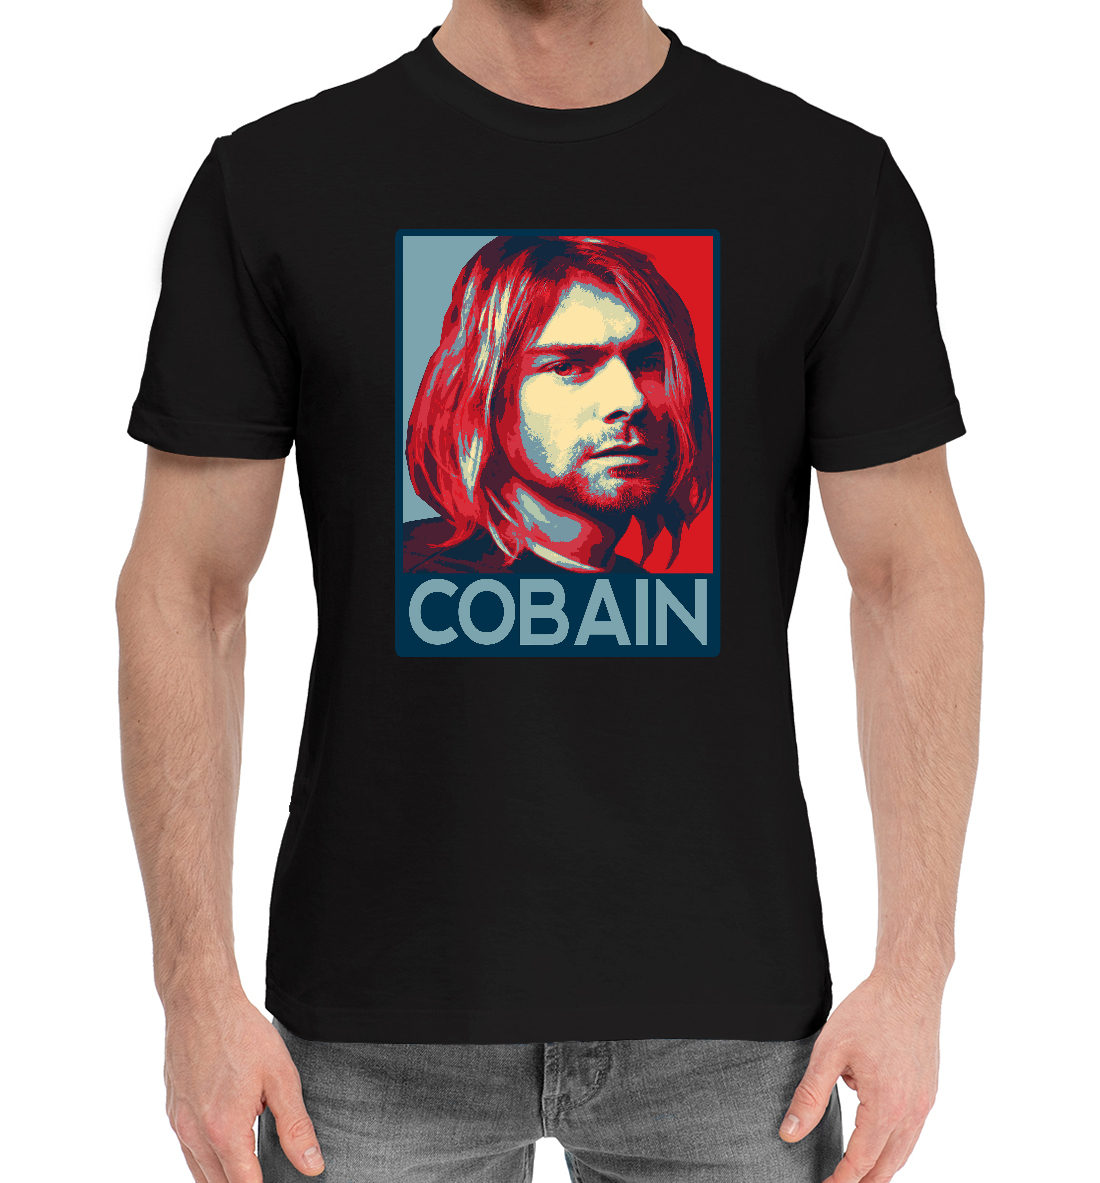 Kurt Cobain (Nirvana) nirvana kurt cobain